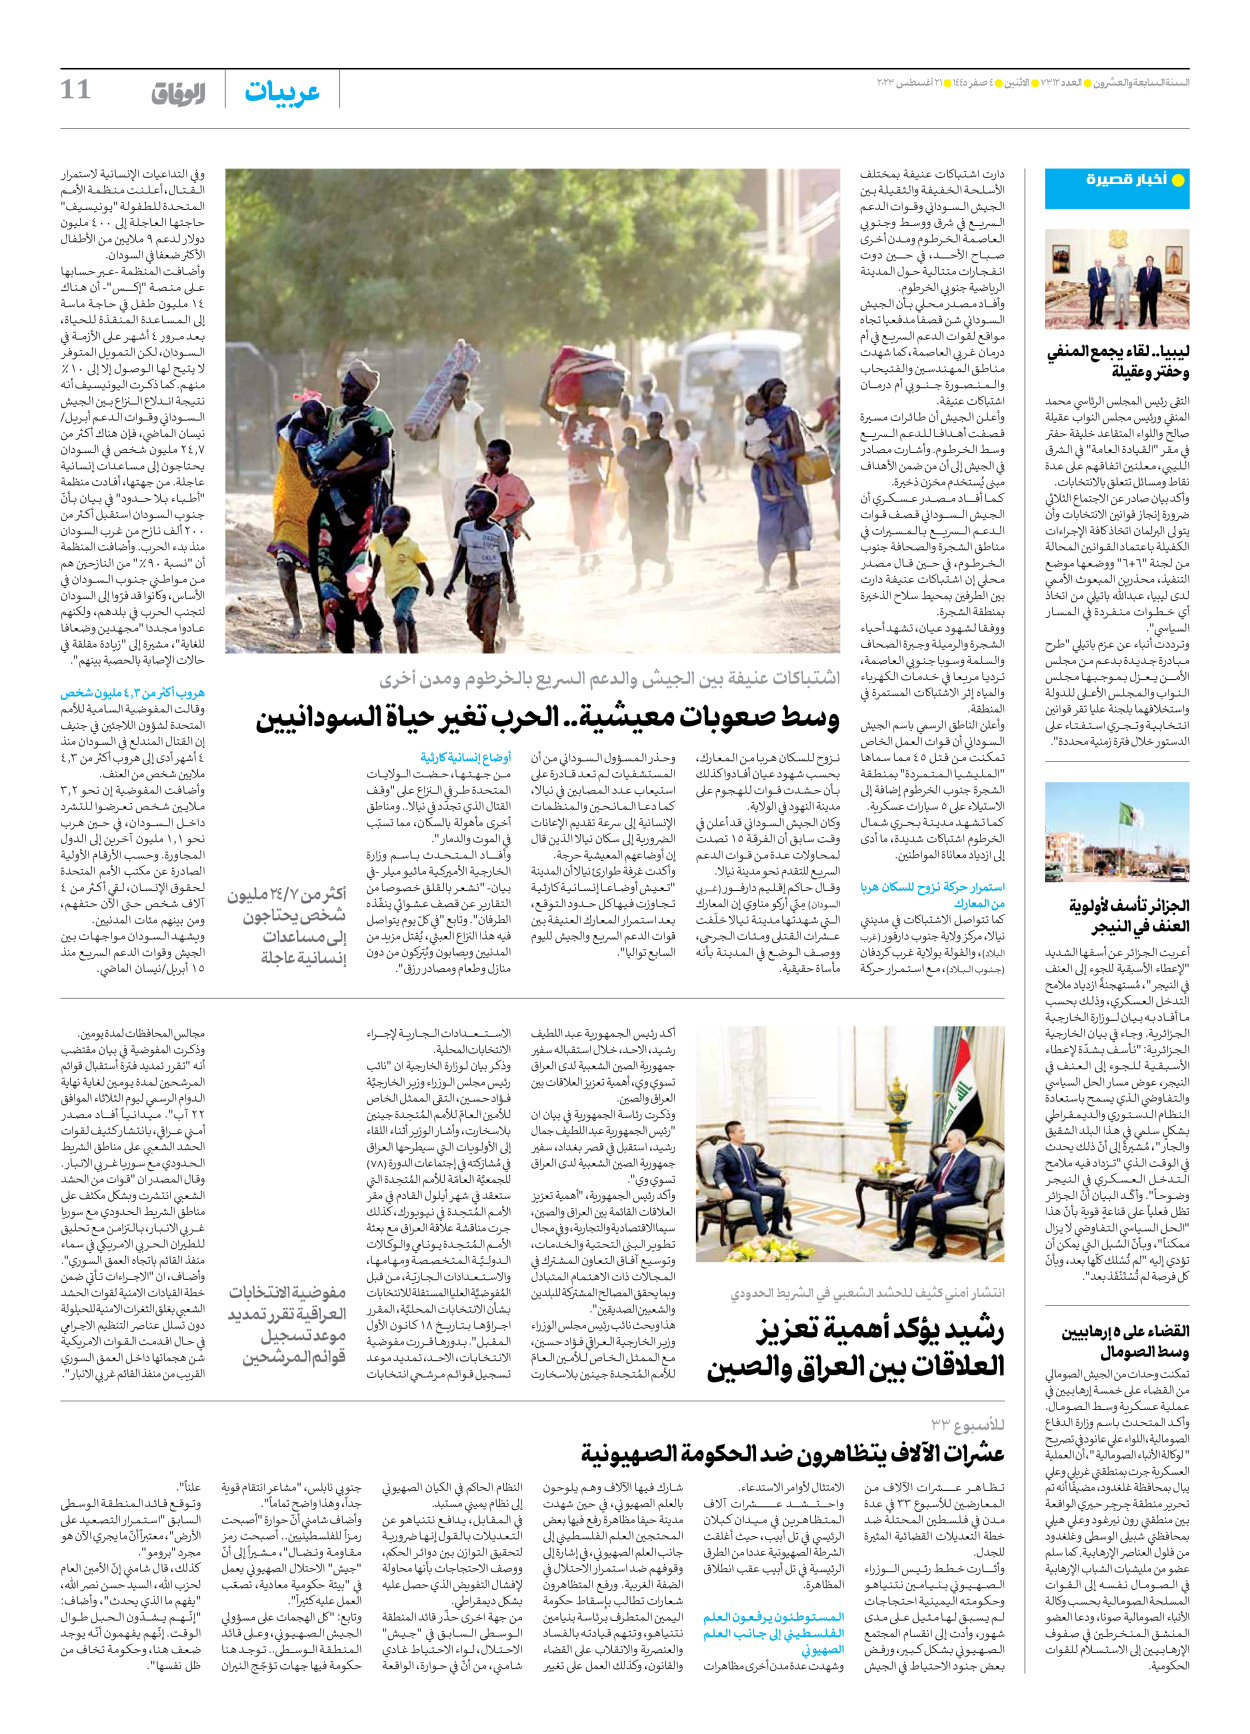 صحیفة ایران الدولیة الوفاق - العدد سبعة آلاف وثلاثمائة واثنا عشر - ٢١ أغسطس ٢٠٢٣ - الصفحة ۱۱